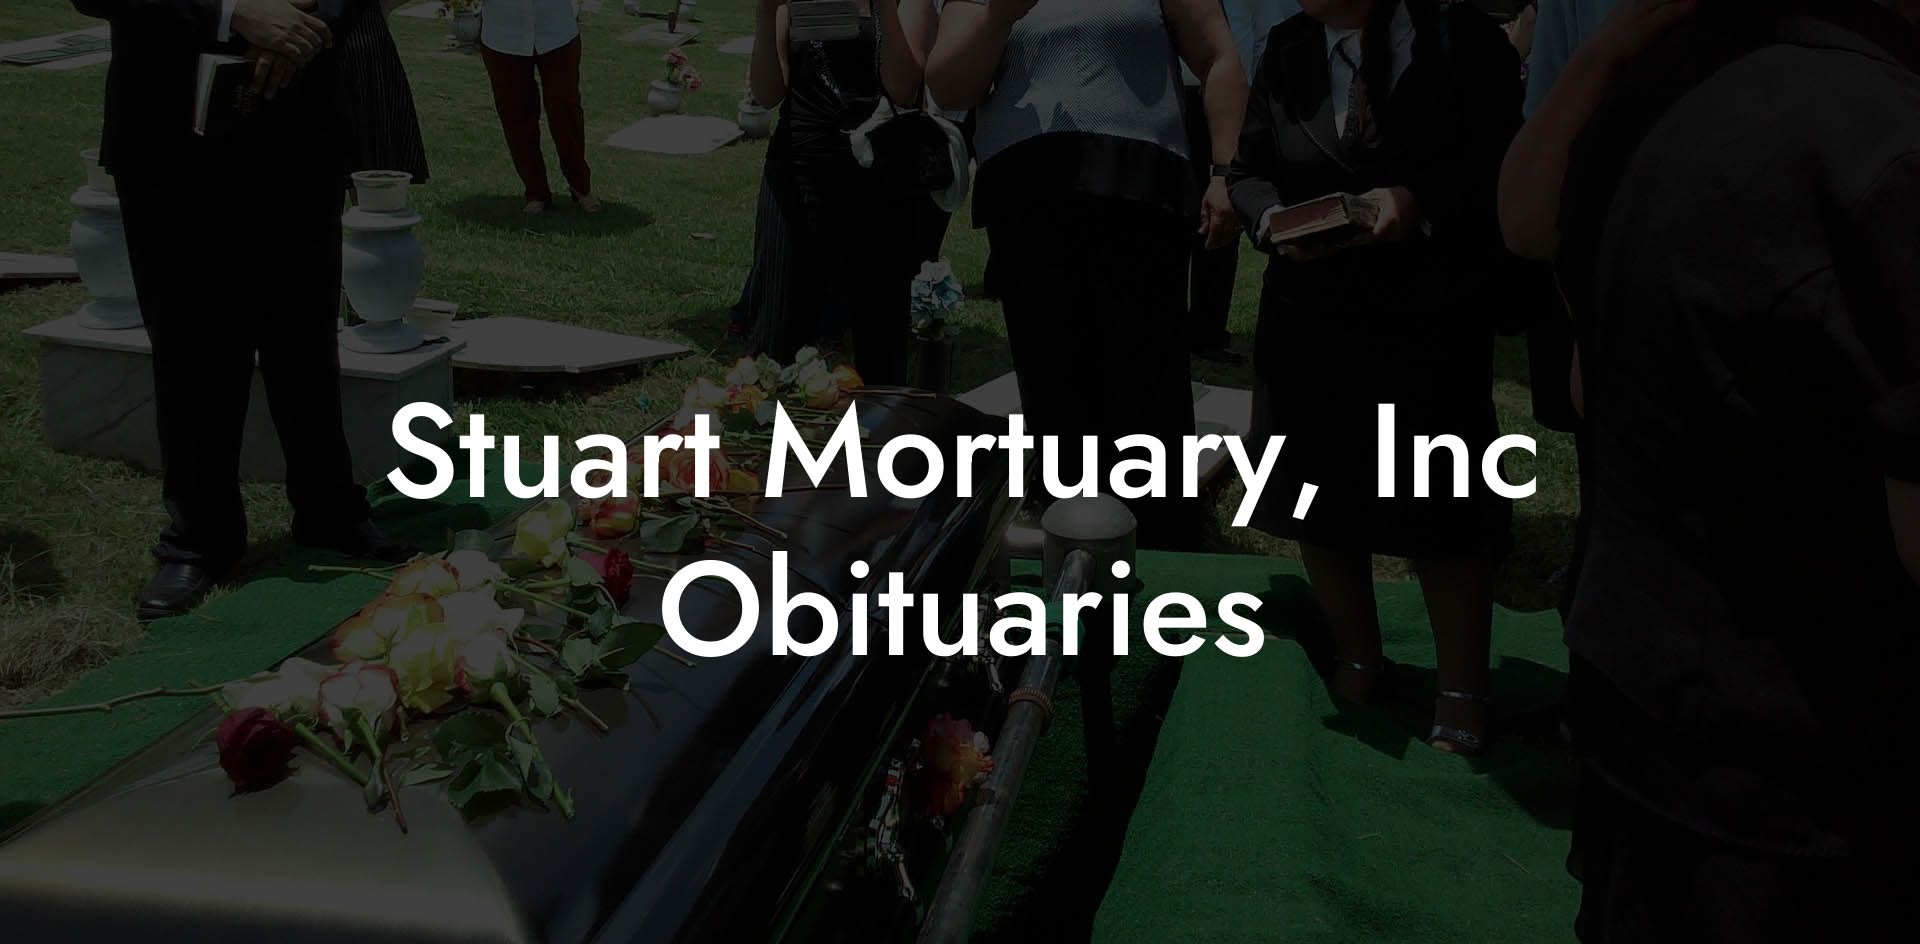 Stuart Mortuary, Inc Obituaries